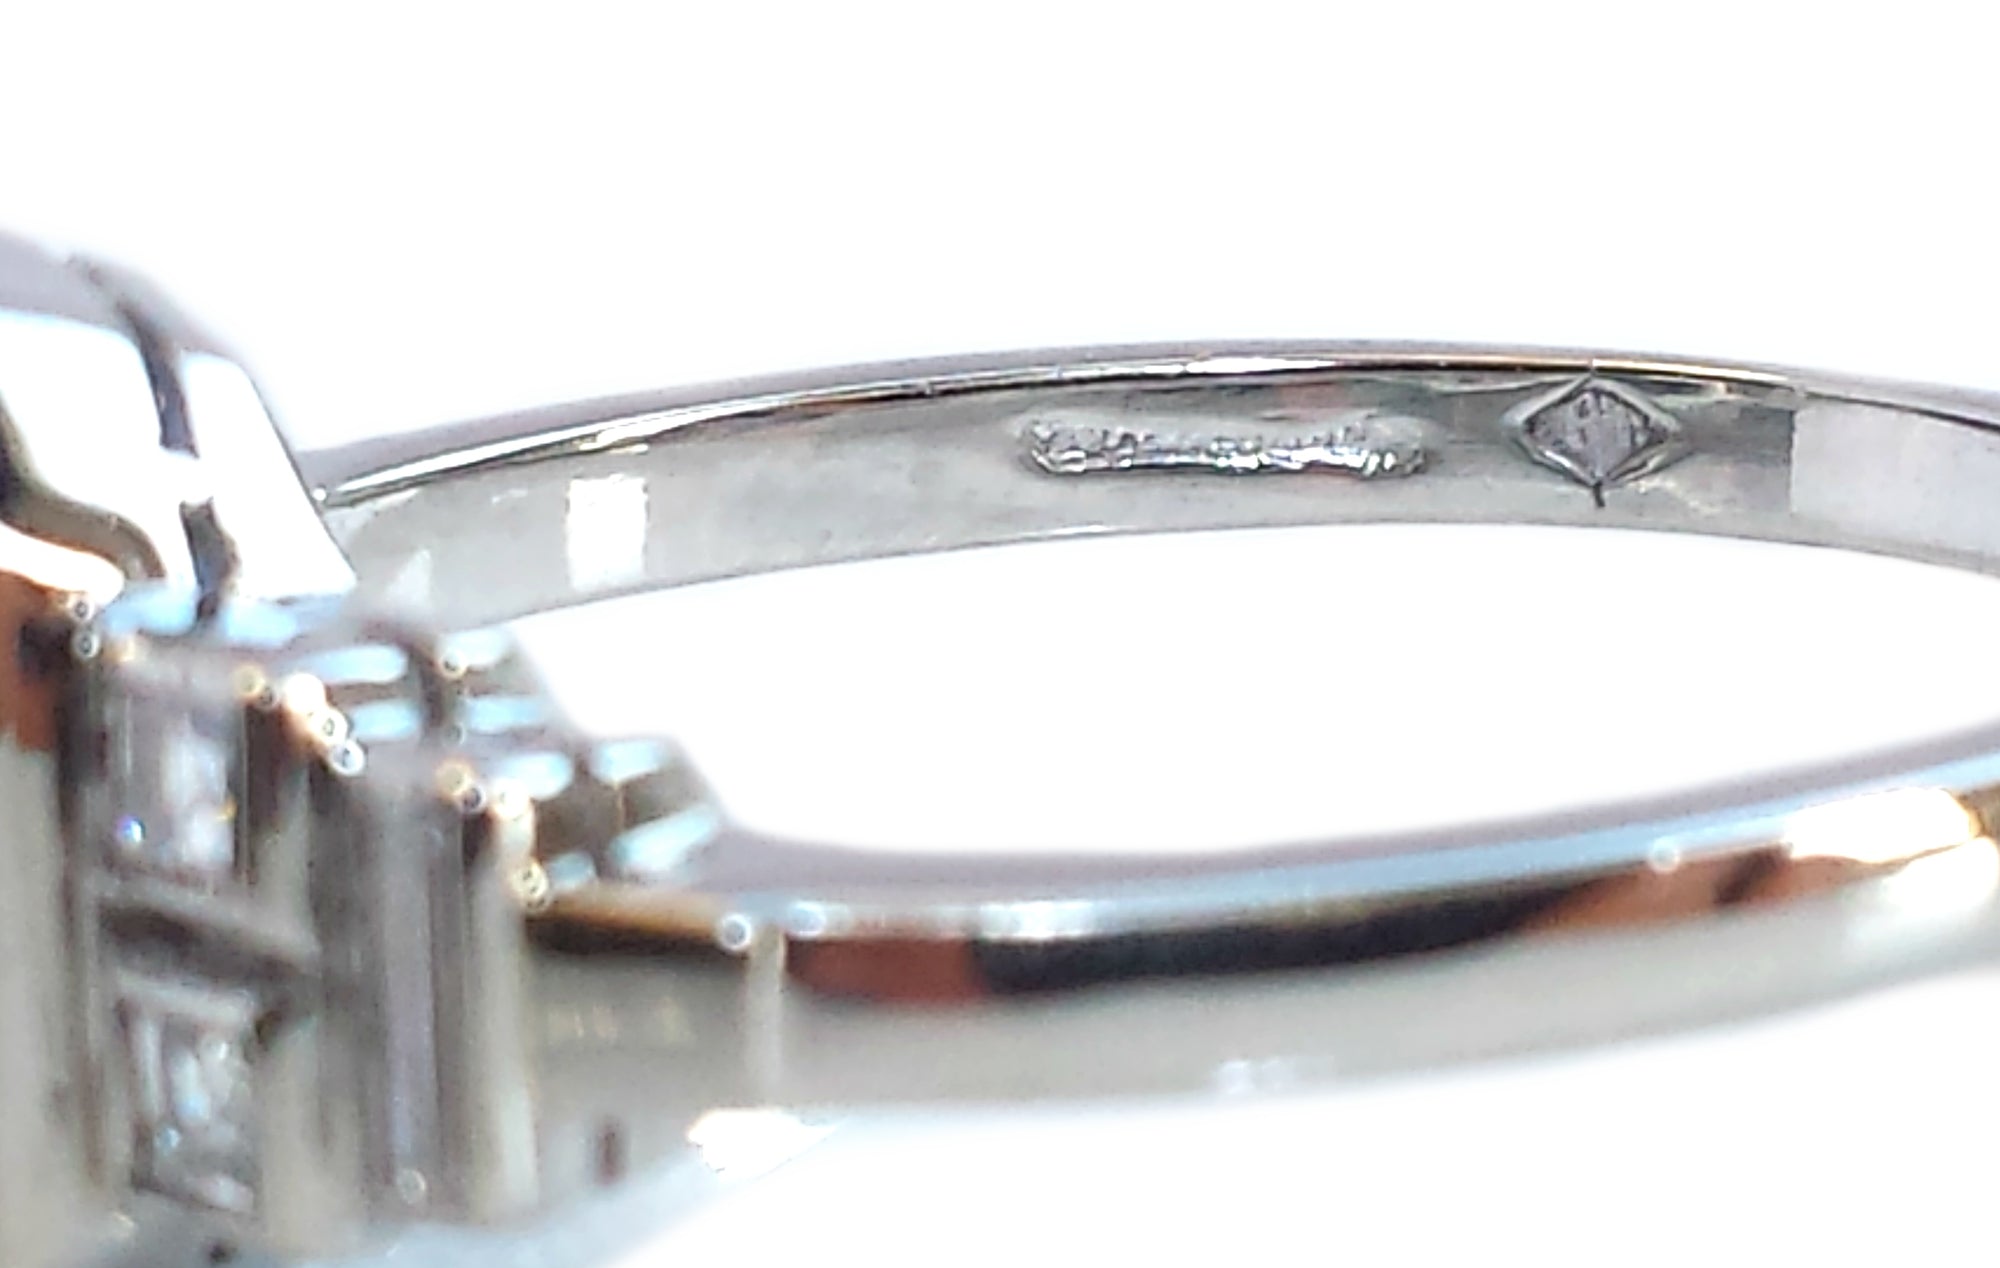 Original Art Deco 3.70ct Sapphire Diamond Platinum Engagement Ring